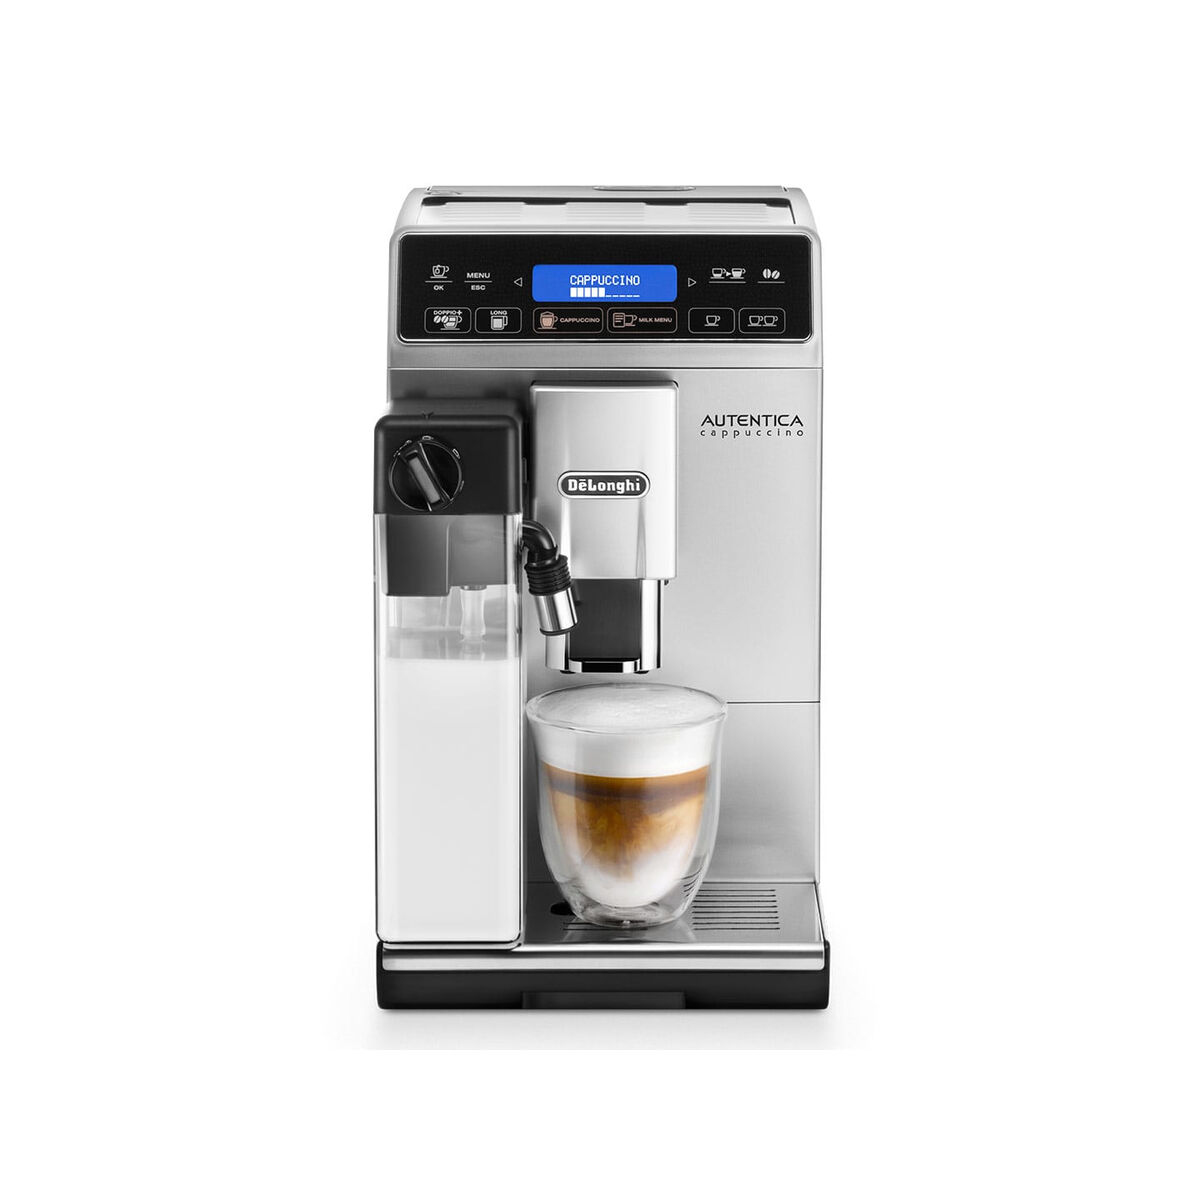 Osta tuote Superautomaattinen kahvinkeitin DeLonghi Cappuccino ETAM 29.660.SB Hopeinen Hopea 1450 W 15 bar 1,4 L verkkokaupastamme Korhone: Gourmet & Keittiö 10% alennuksella koodilla KORHONE